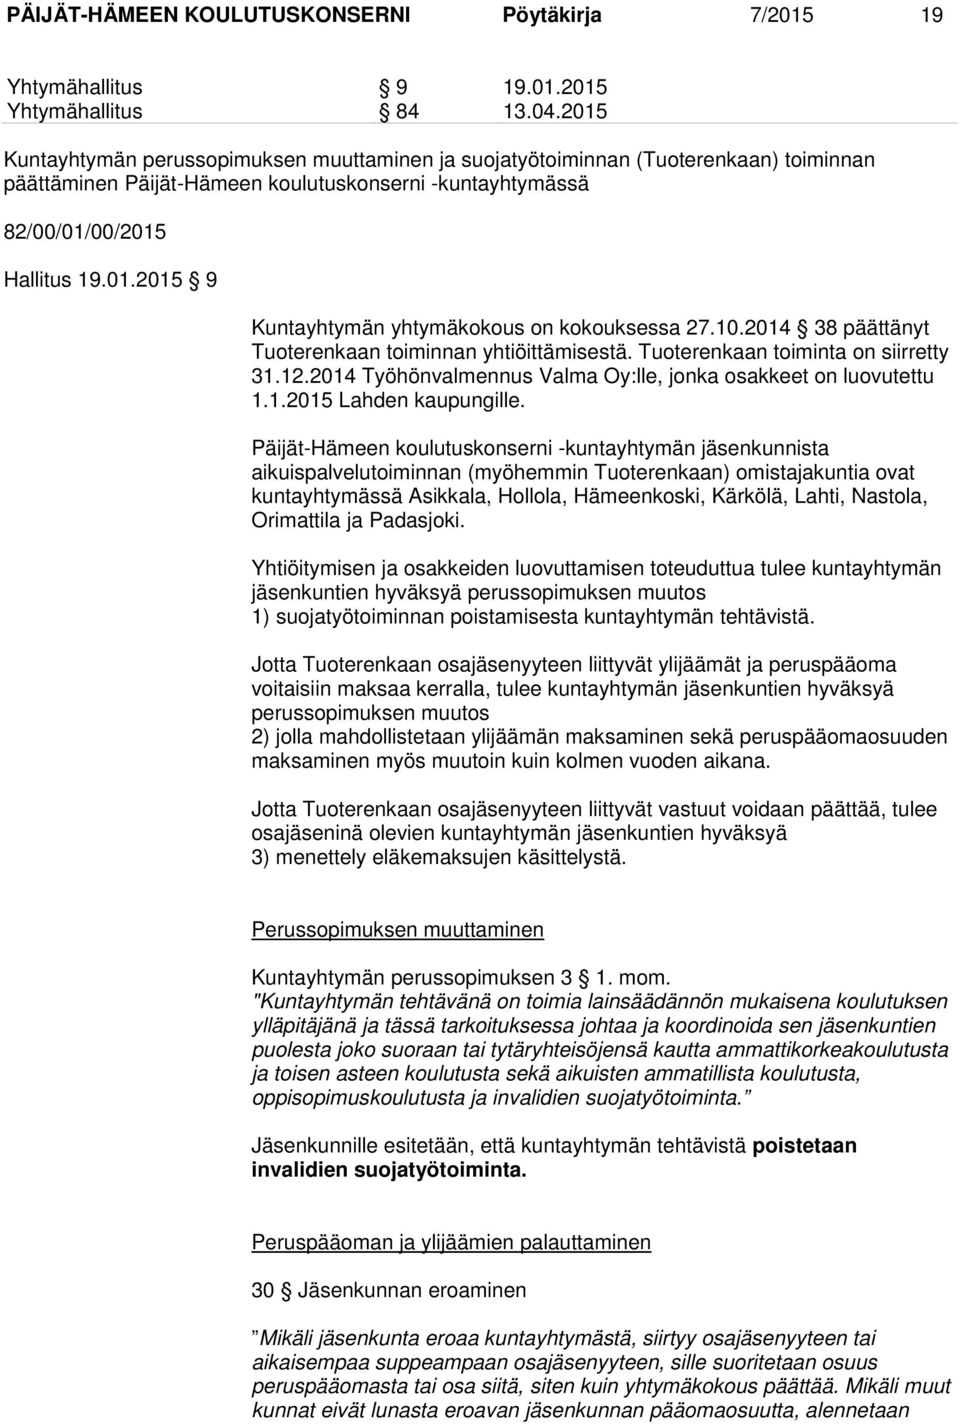 10.2014 38 päättänyt Tuoterenkaan toiminnan yhtiöittämisestä. Tuoterenkaan toiminta on siirretty 31.12.2014 Työhönvalmennus Valma Oy:lle, jonka osakkeet on luovutettu 1.1.2015 Lahden kaupungille.